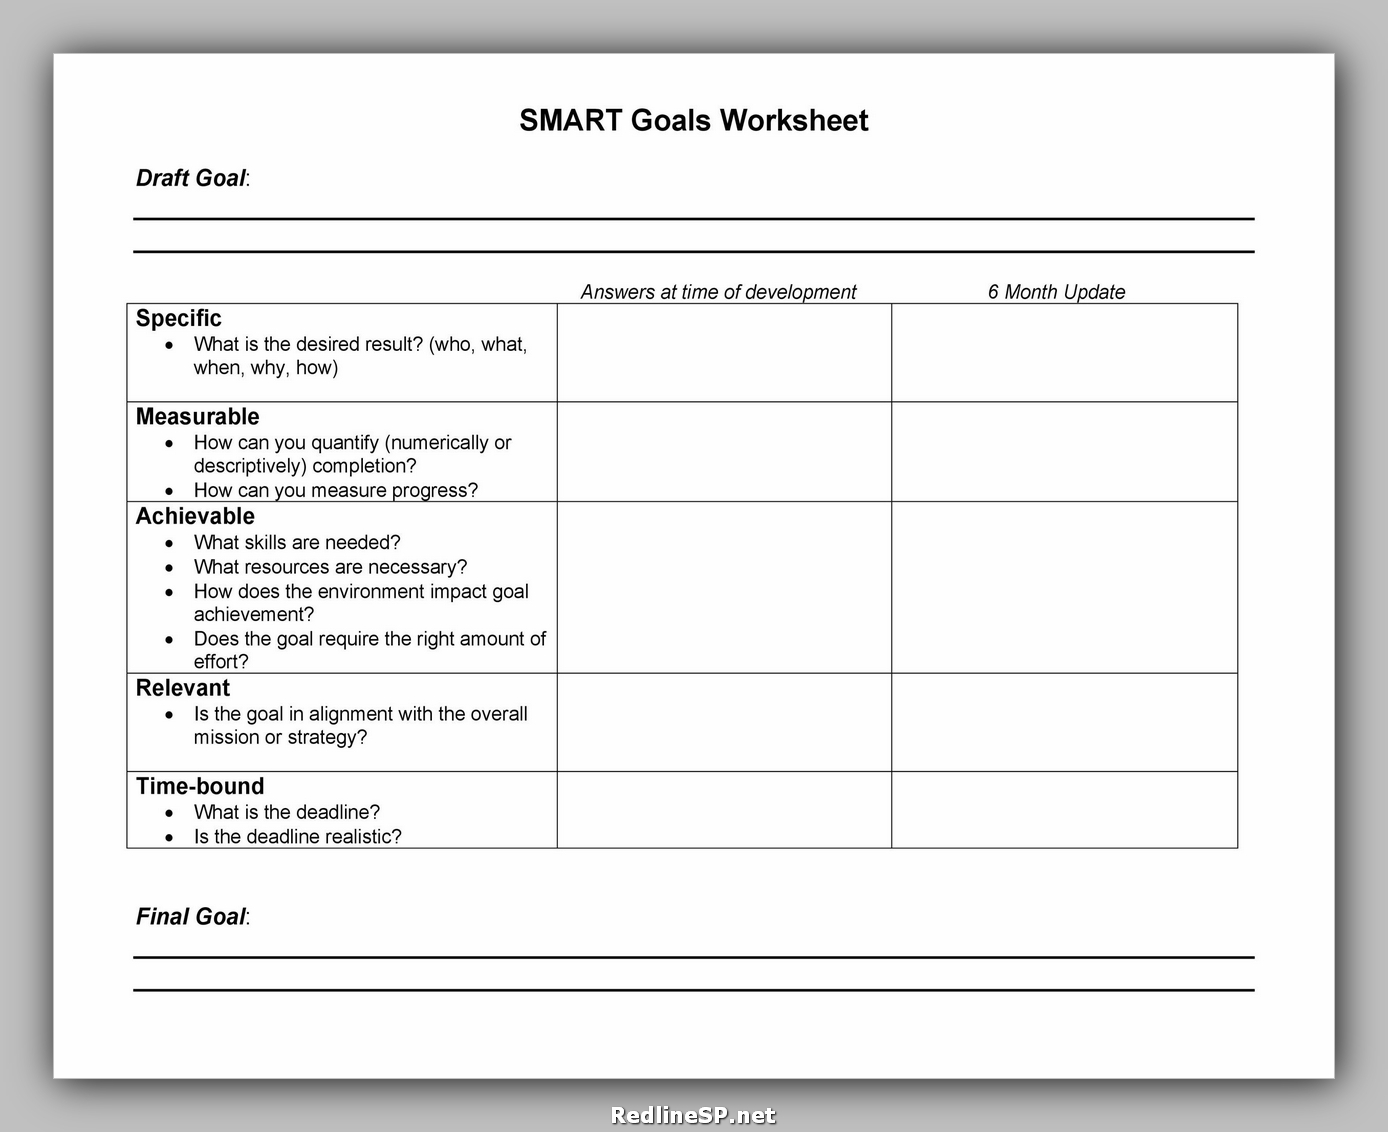 35-goal-setting-worksheet-free-redlinesp